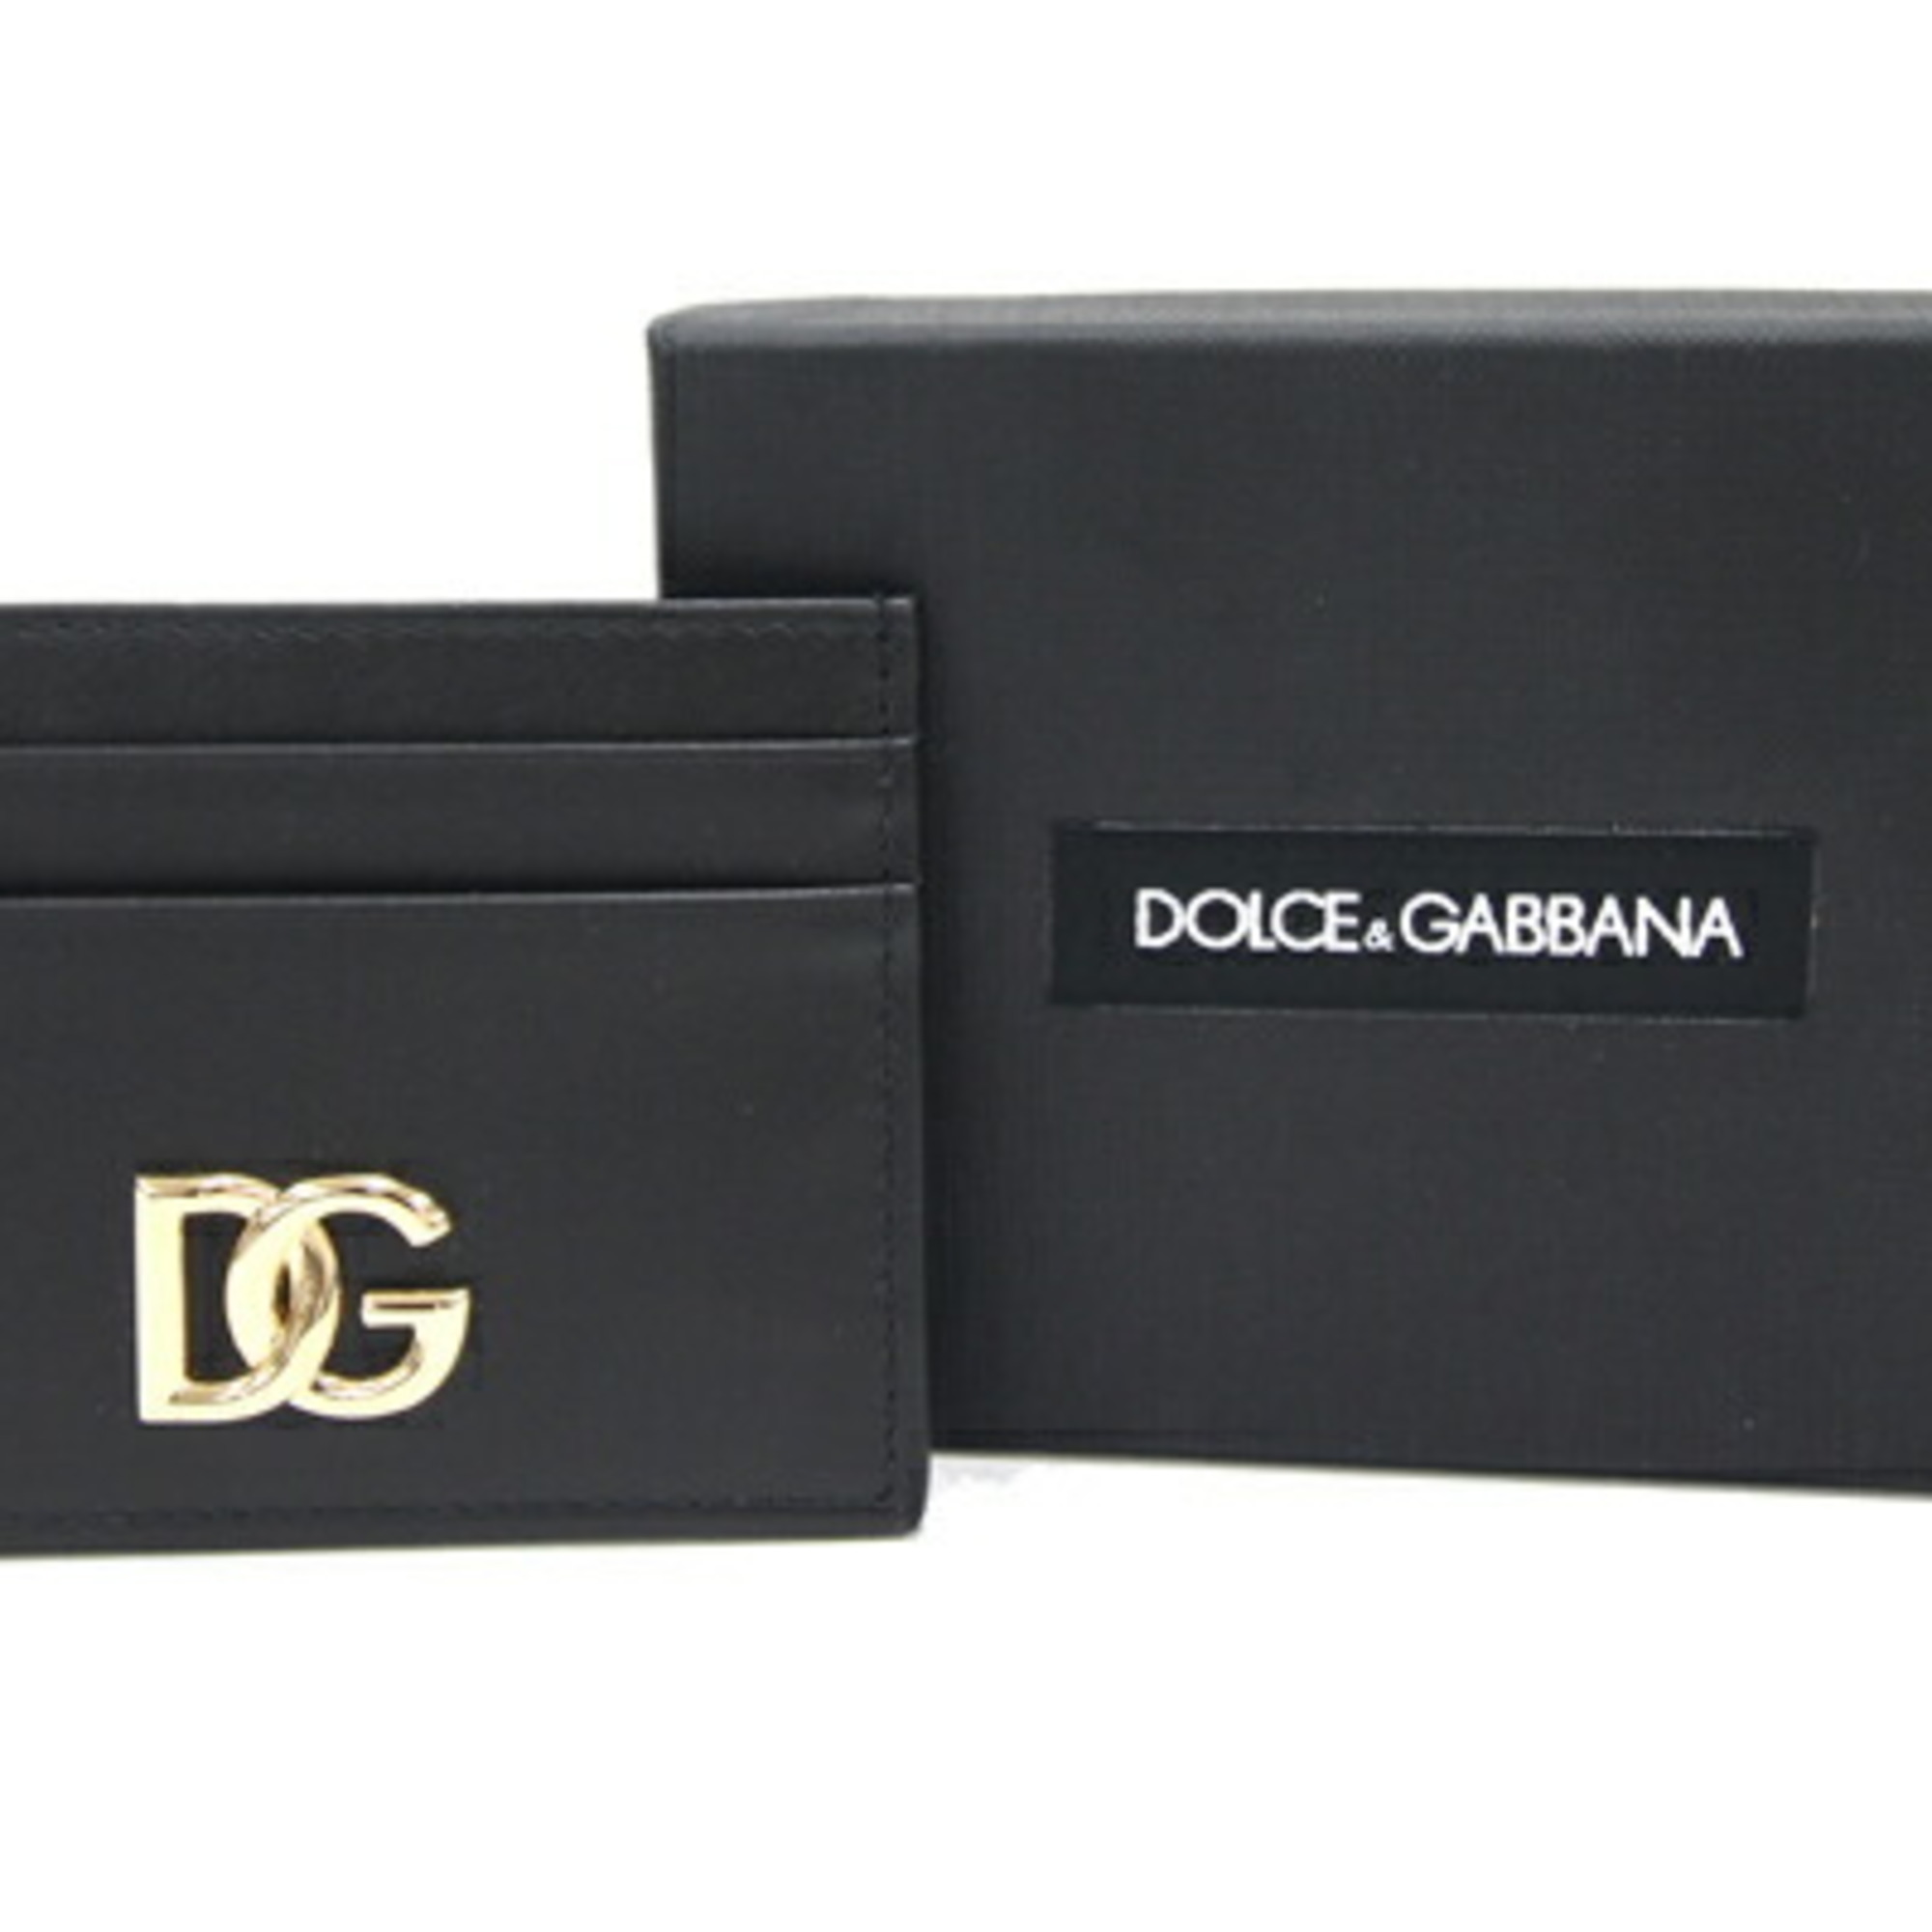 Dolce & Gabbana Card Case Black Leather Pass Men's DOLCE&GABBANA